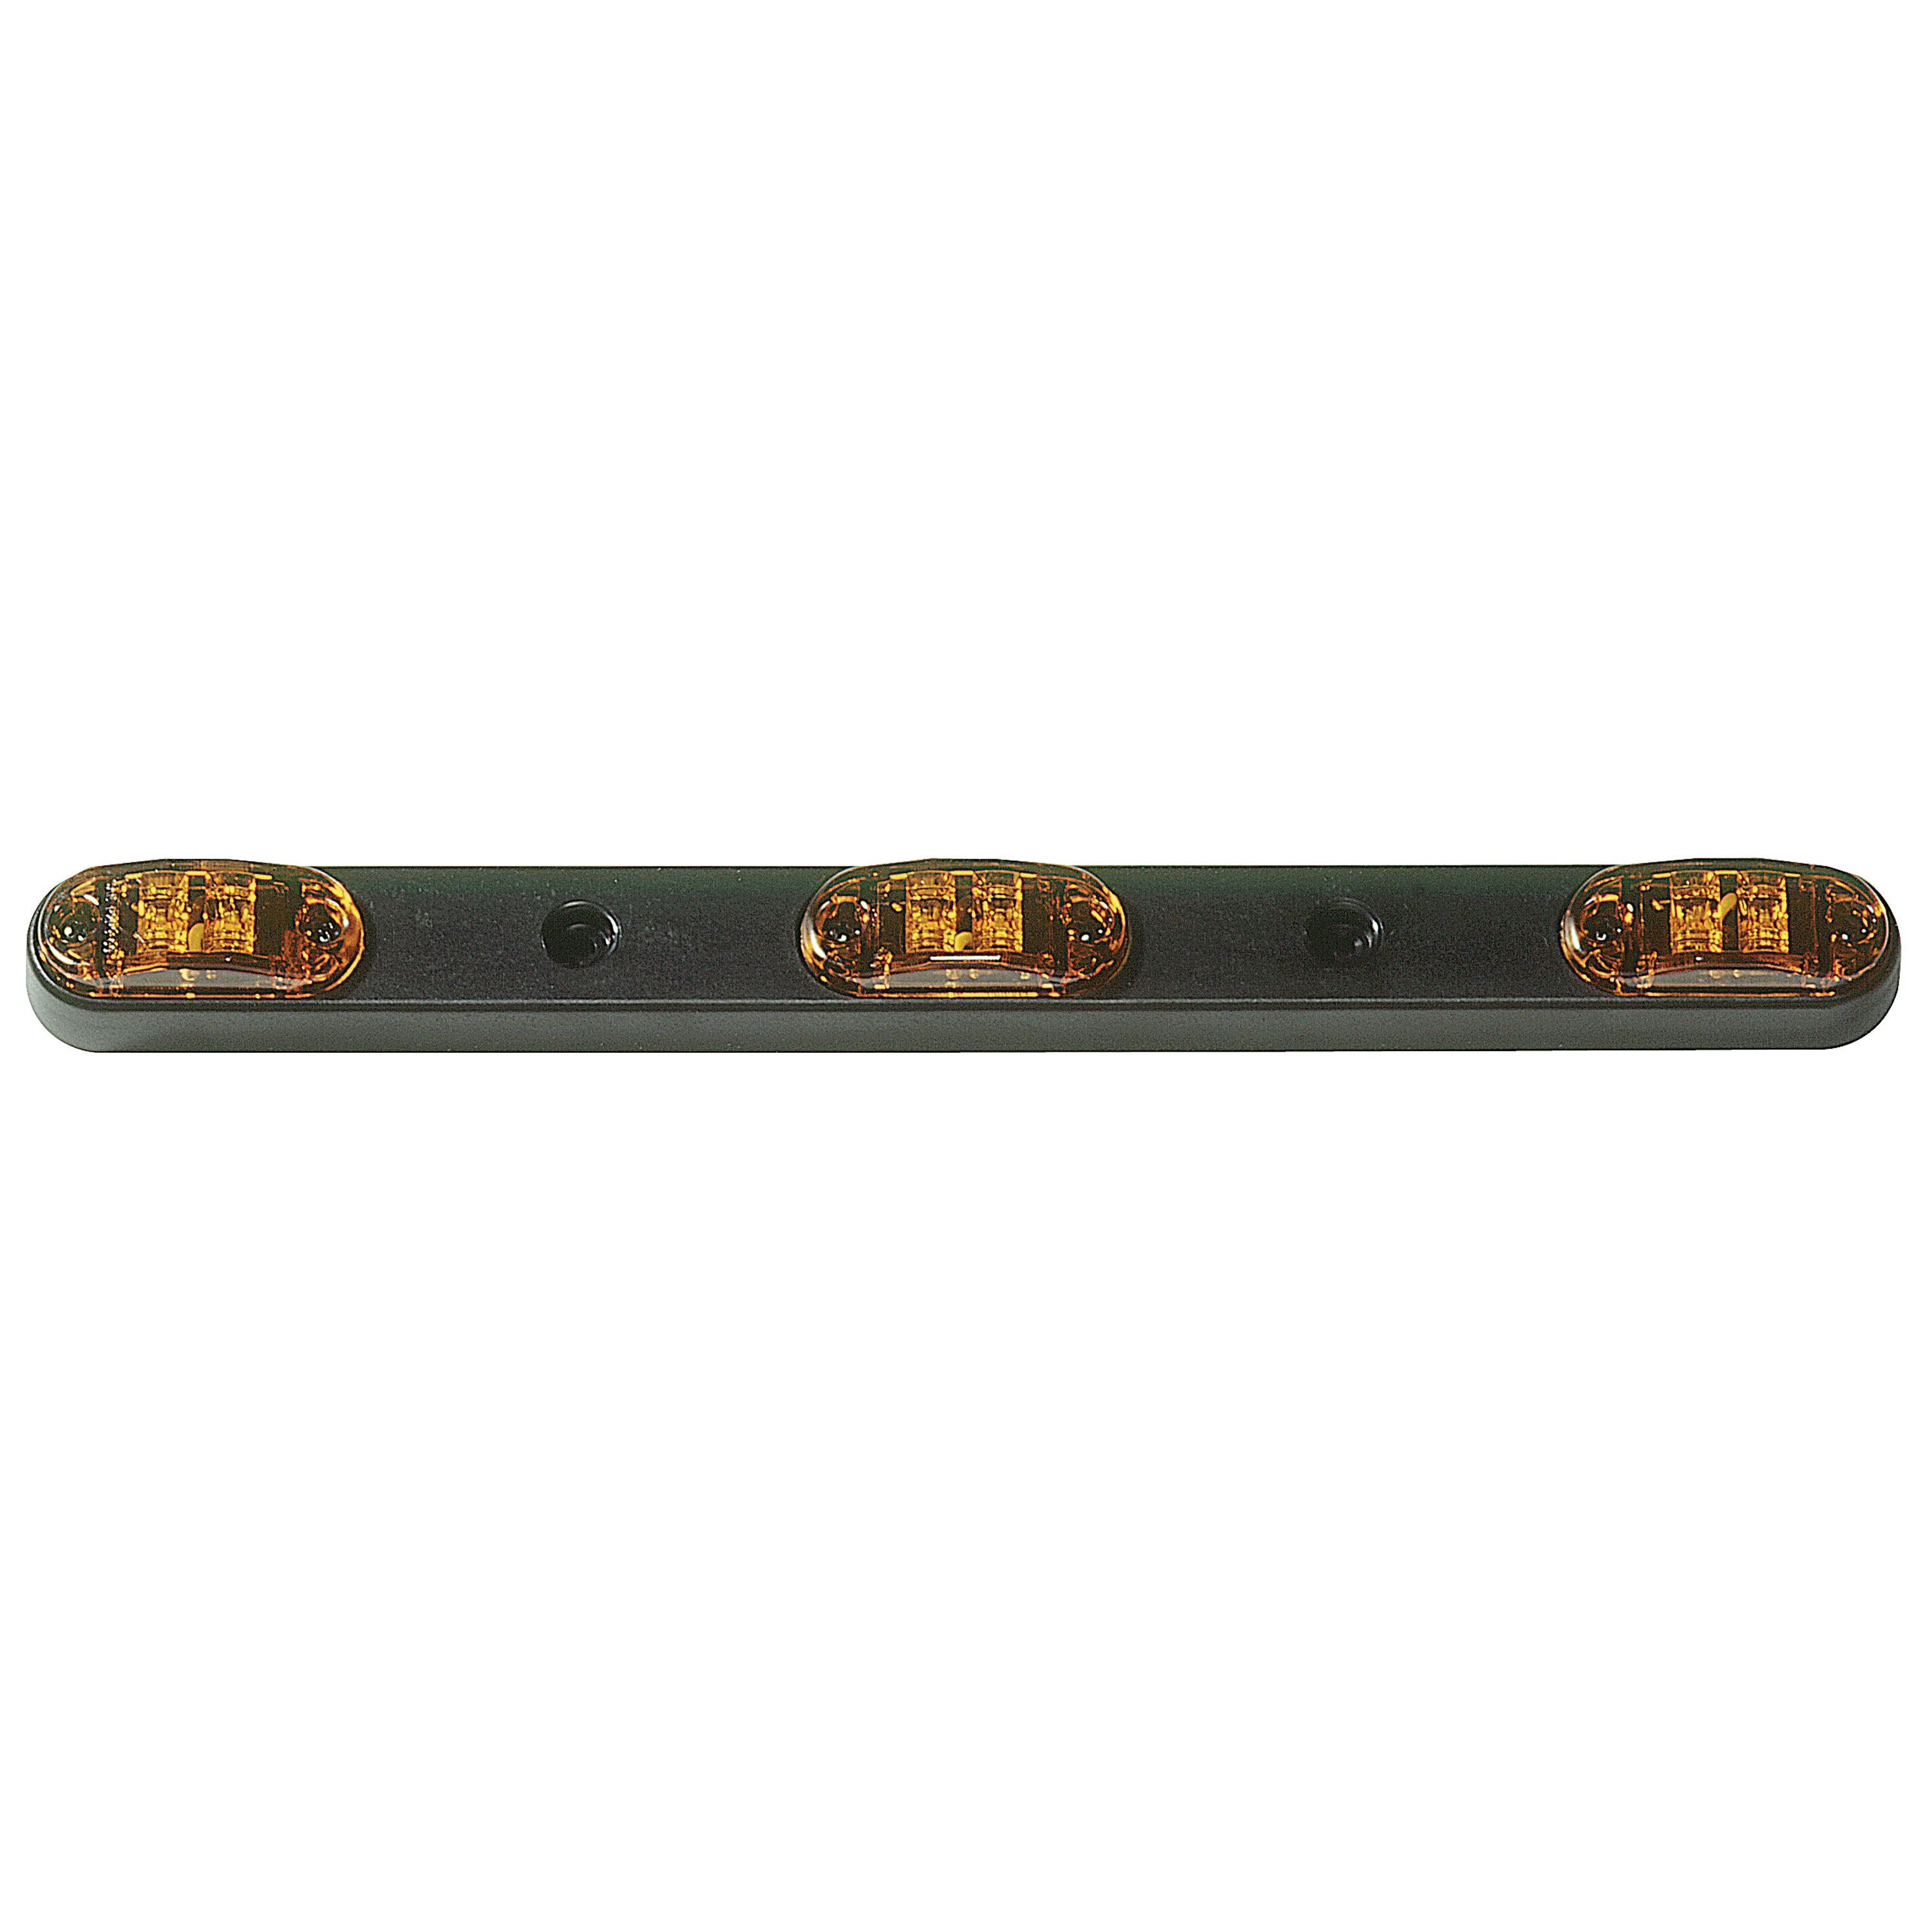 Innovative Lighting 220-4400-7 LED Tri-Bar Identification Light 15" - Red/Red Lens